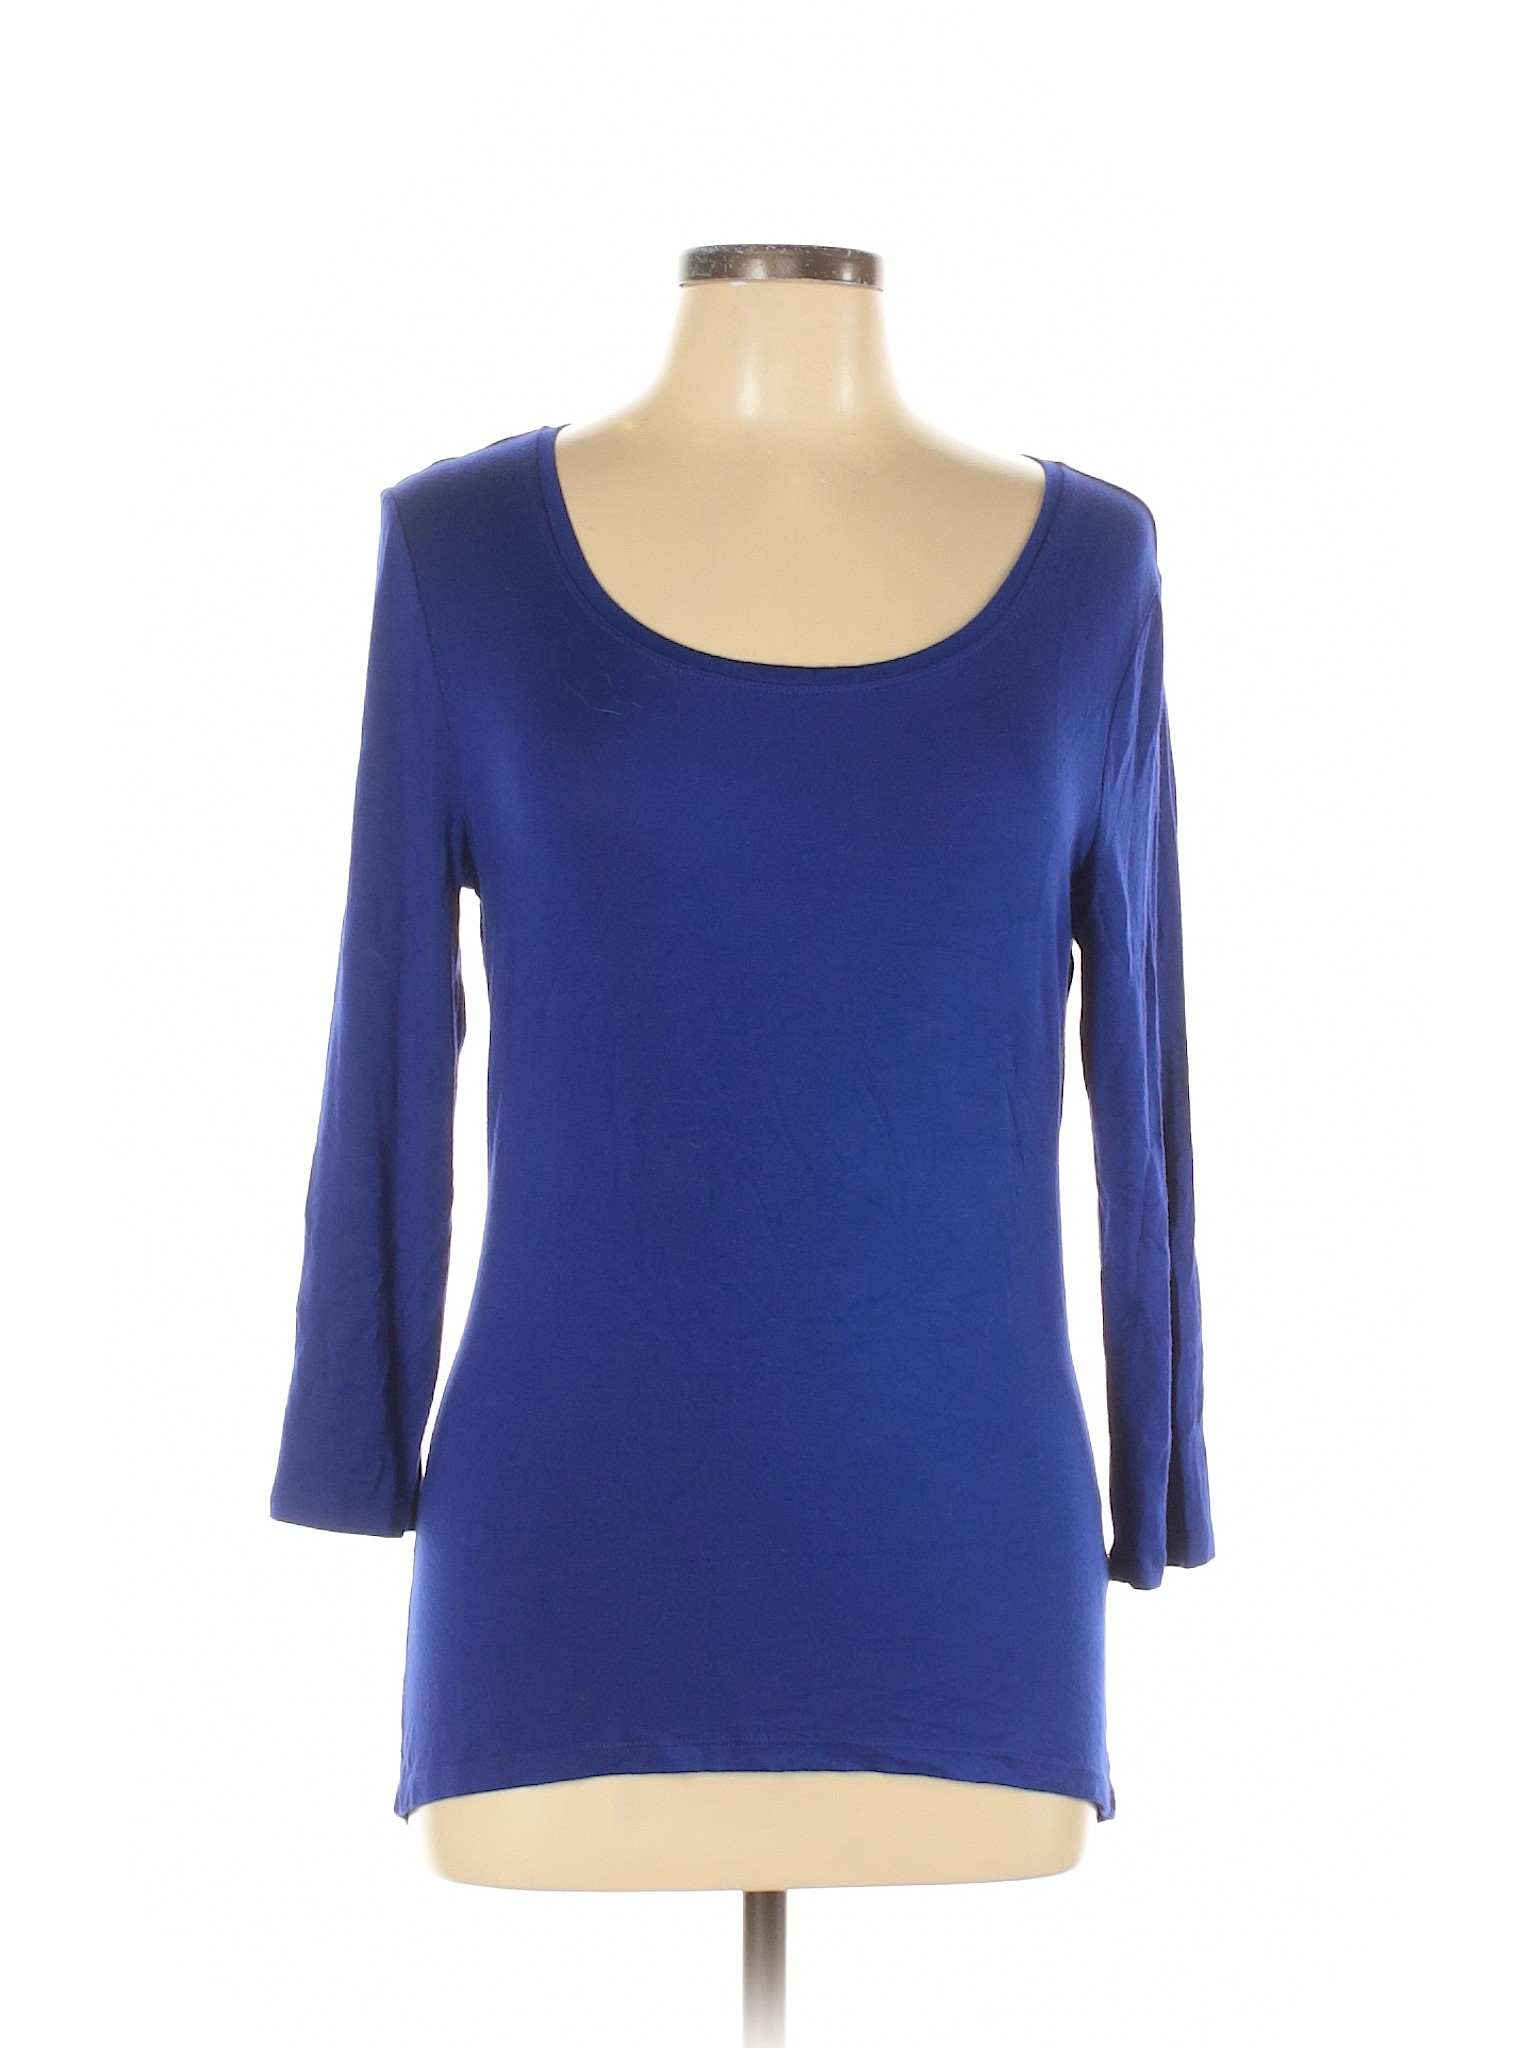 Tahari Women Blue 3/4 Sleeve T-Shirt L | eBay